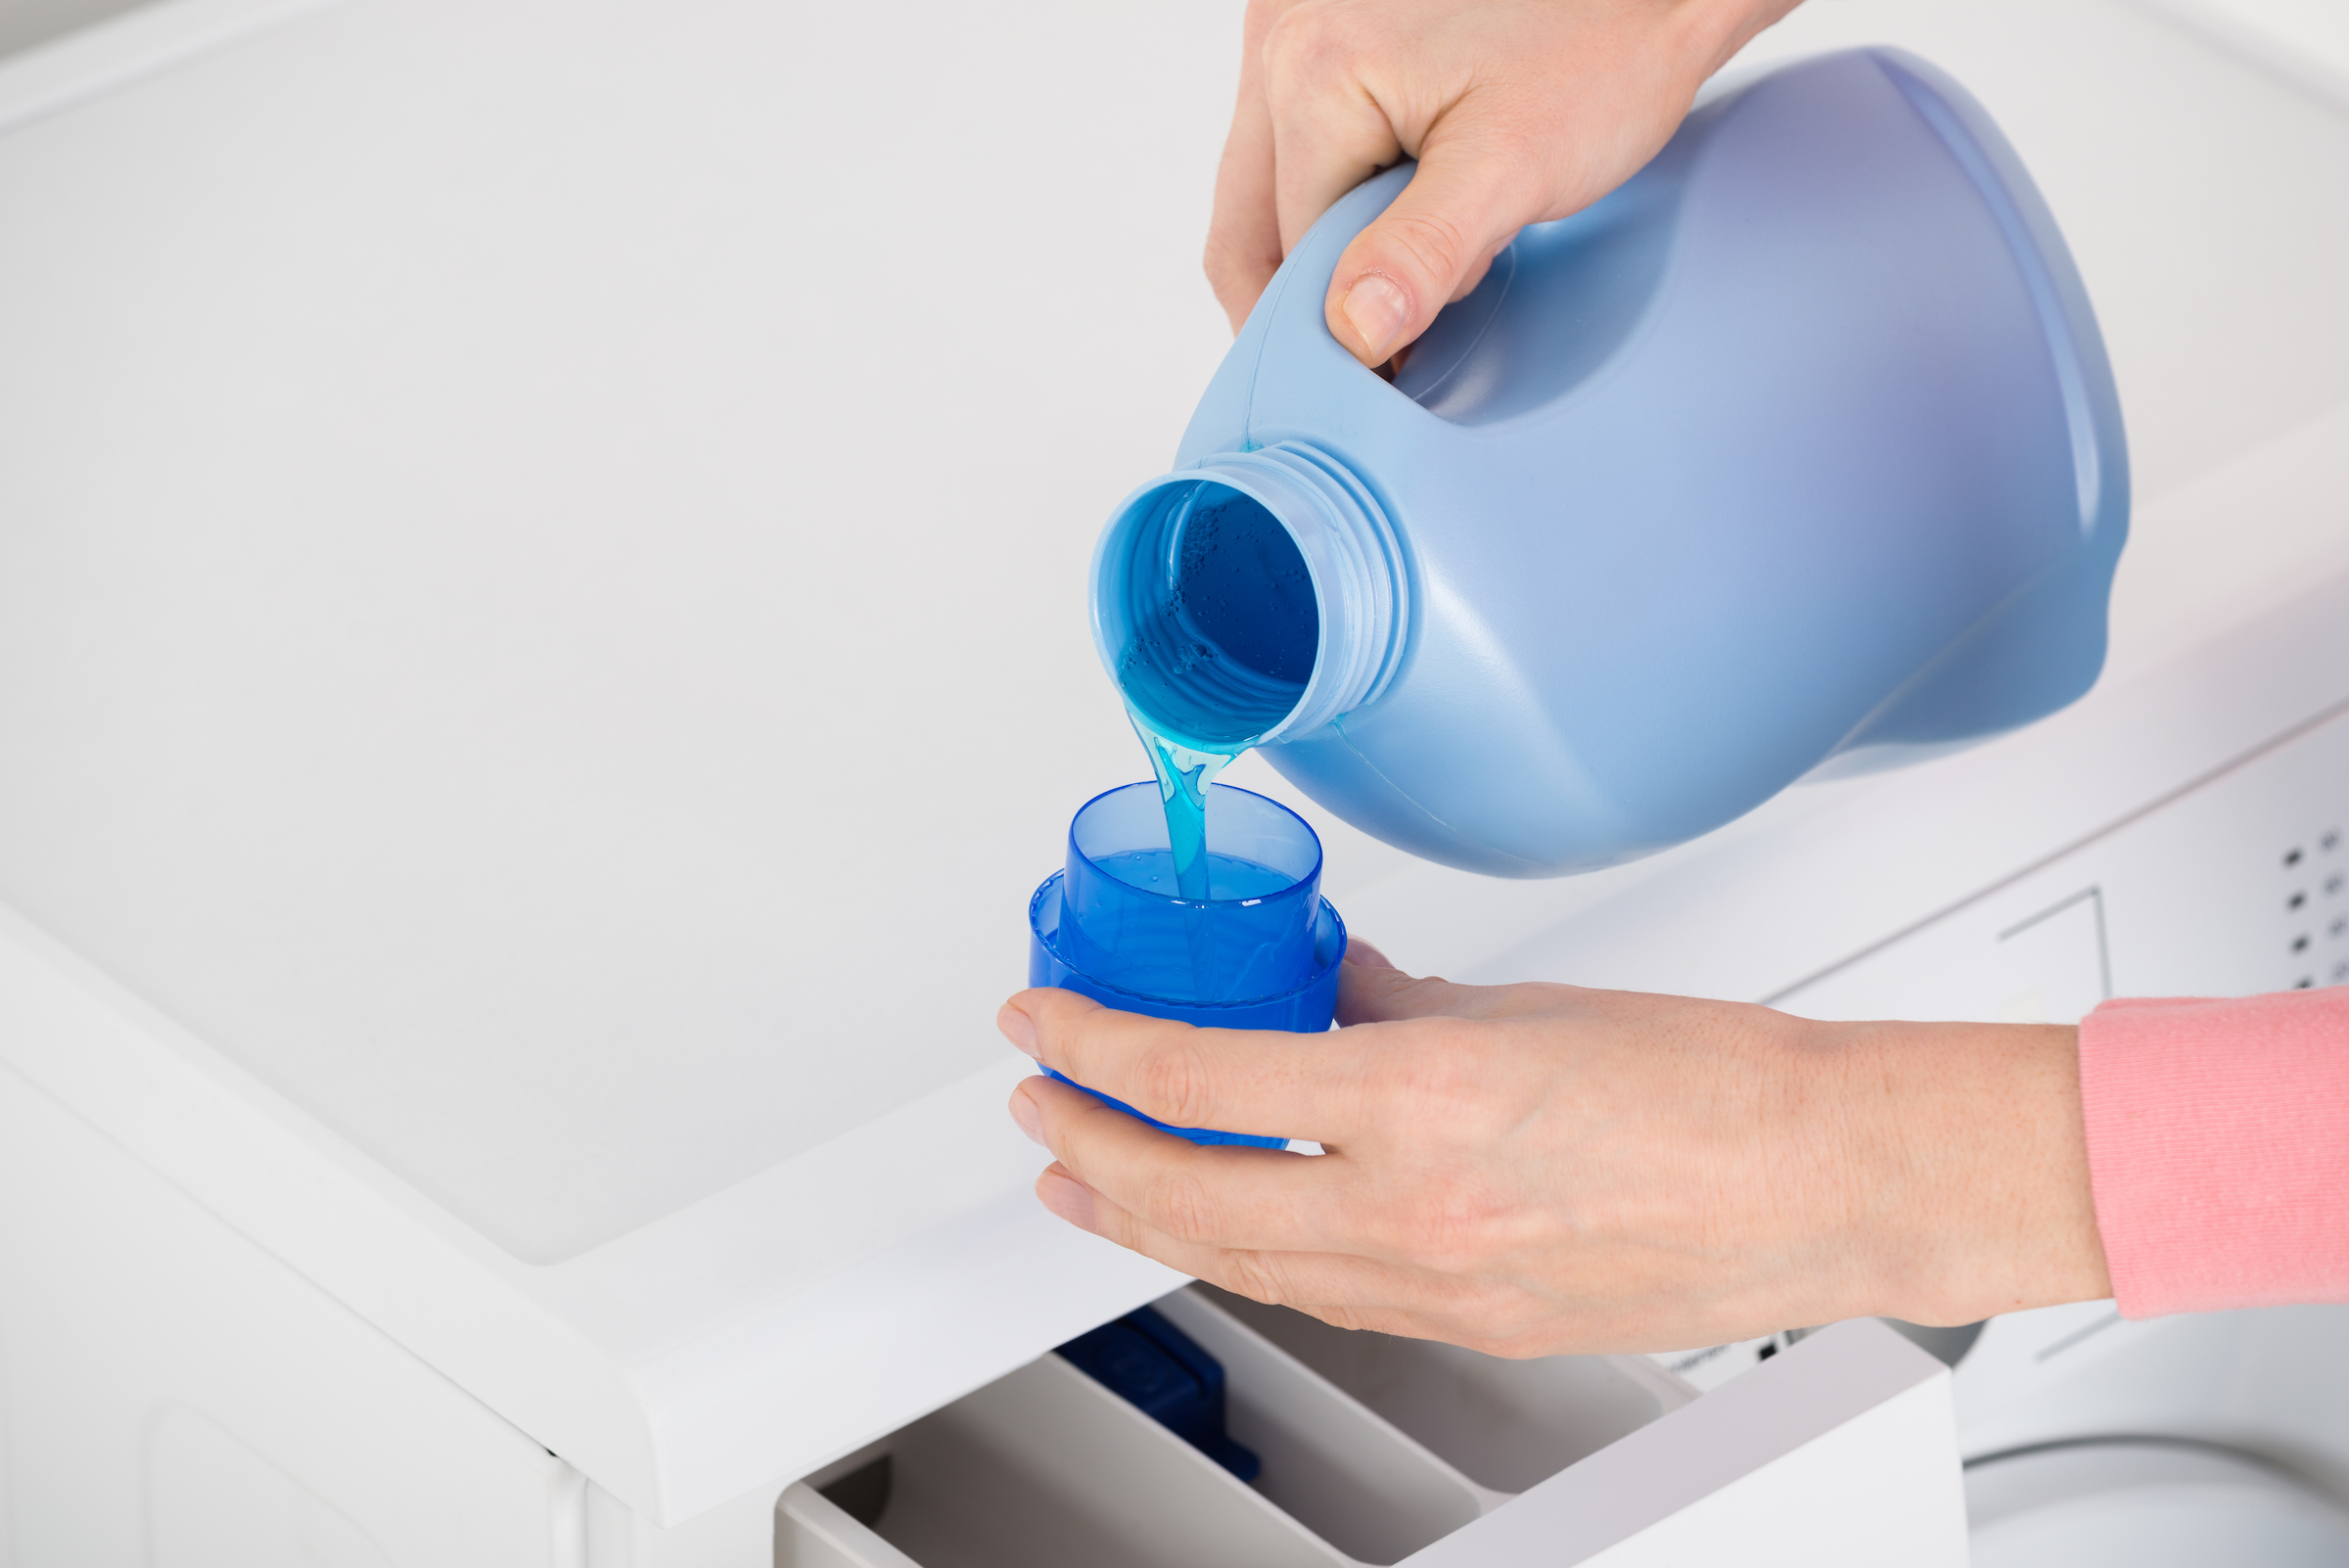 secreto para calcular la dosis perfecta de detergente para la ropa | Computer Hoy